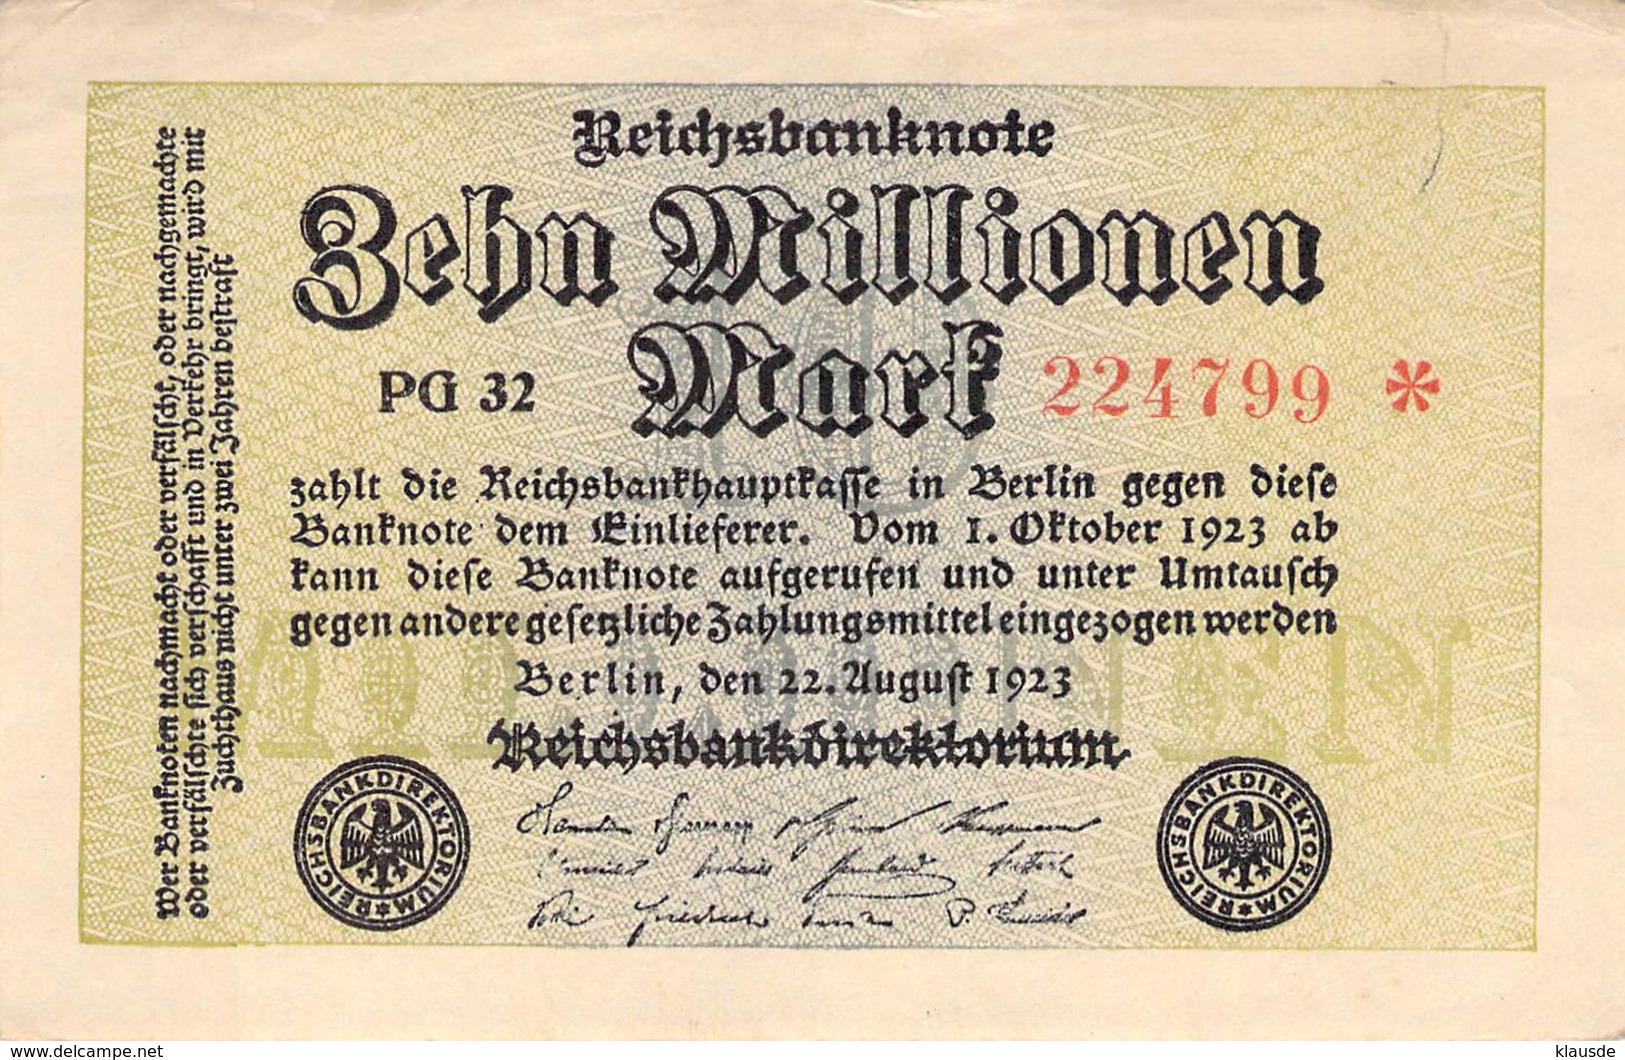 10 Mio Mark Reichsbanknote VF/F (III) PG 32 - 5 Millionen Mark